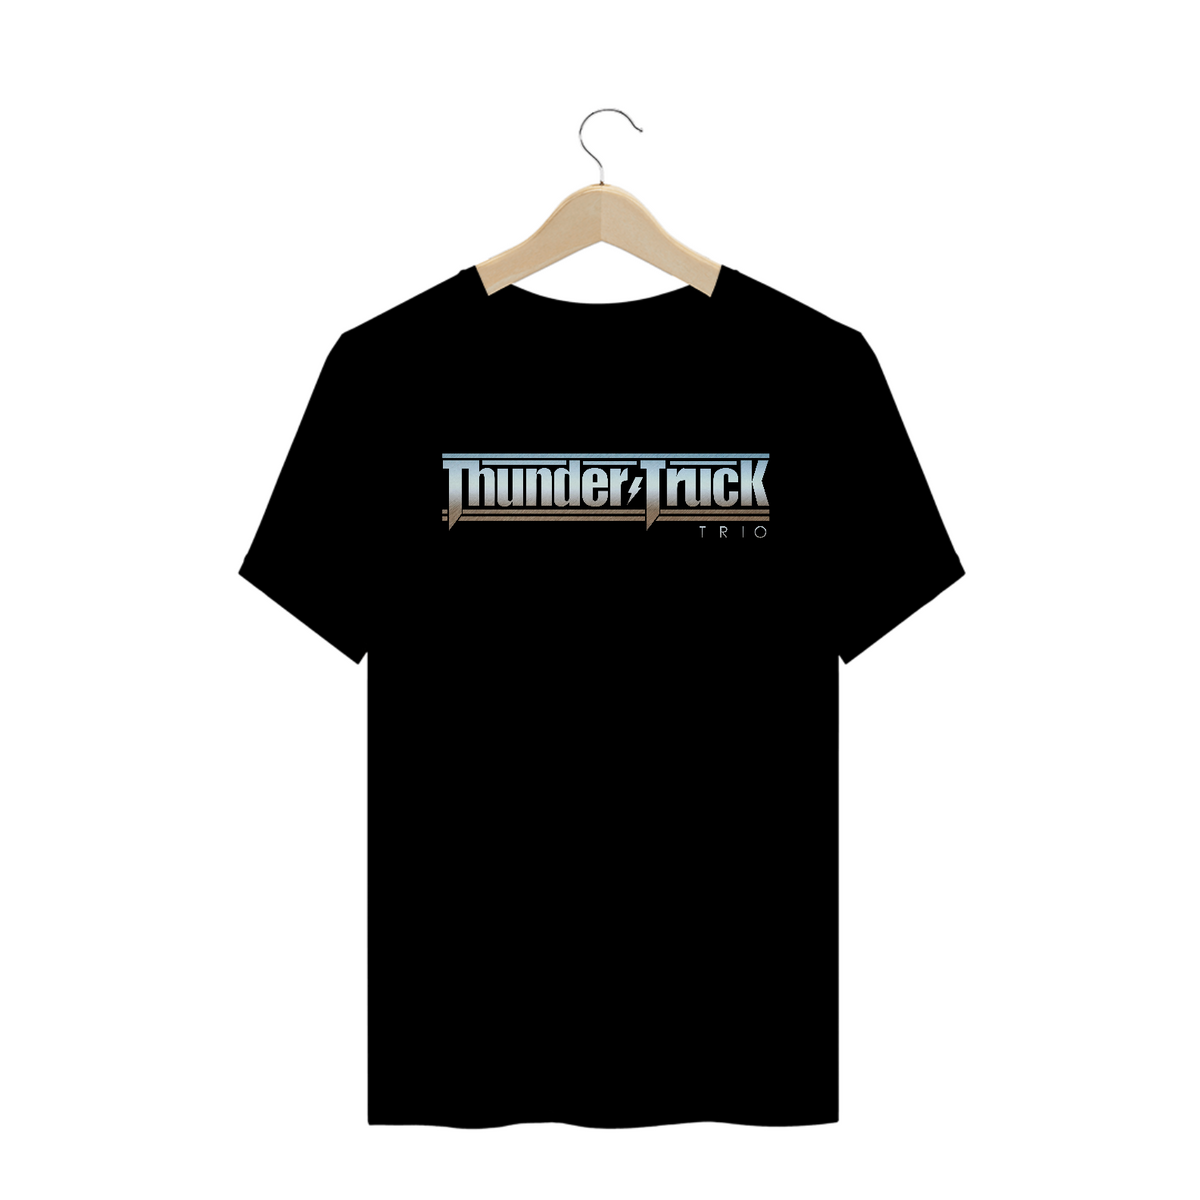 Nome do produtoT- Shirt Quality Thunder Truck Trio Preta